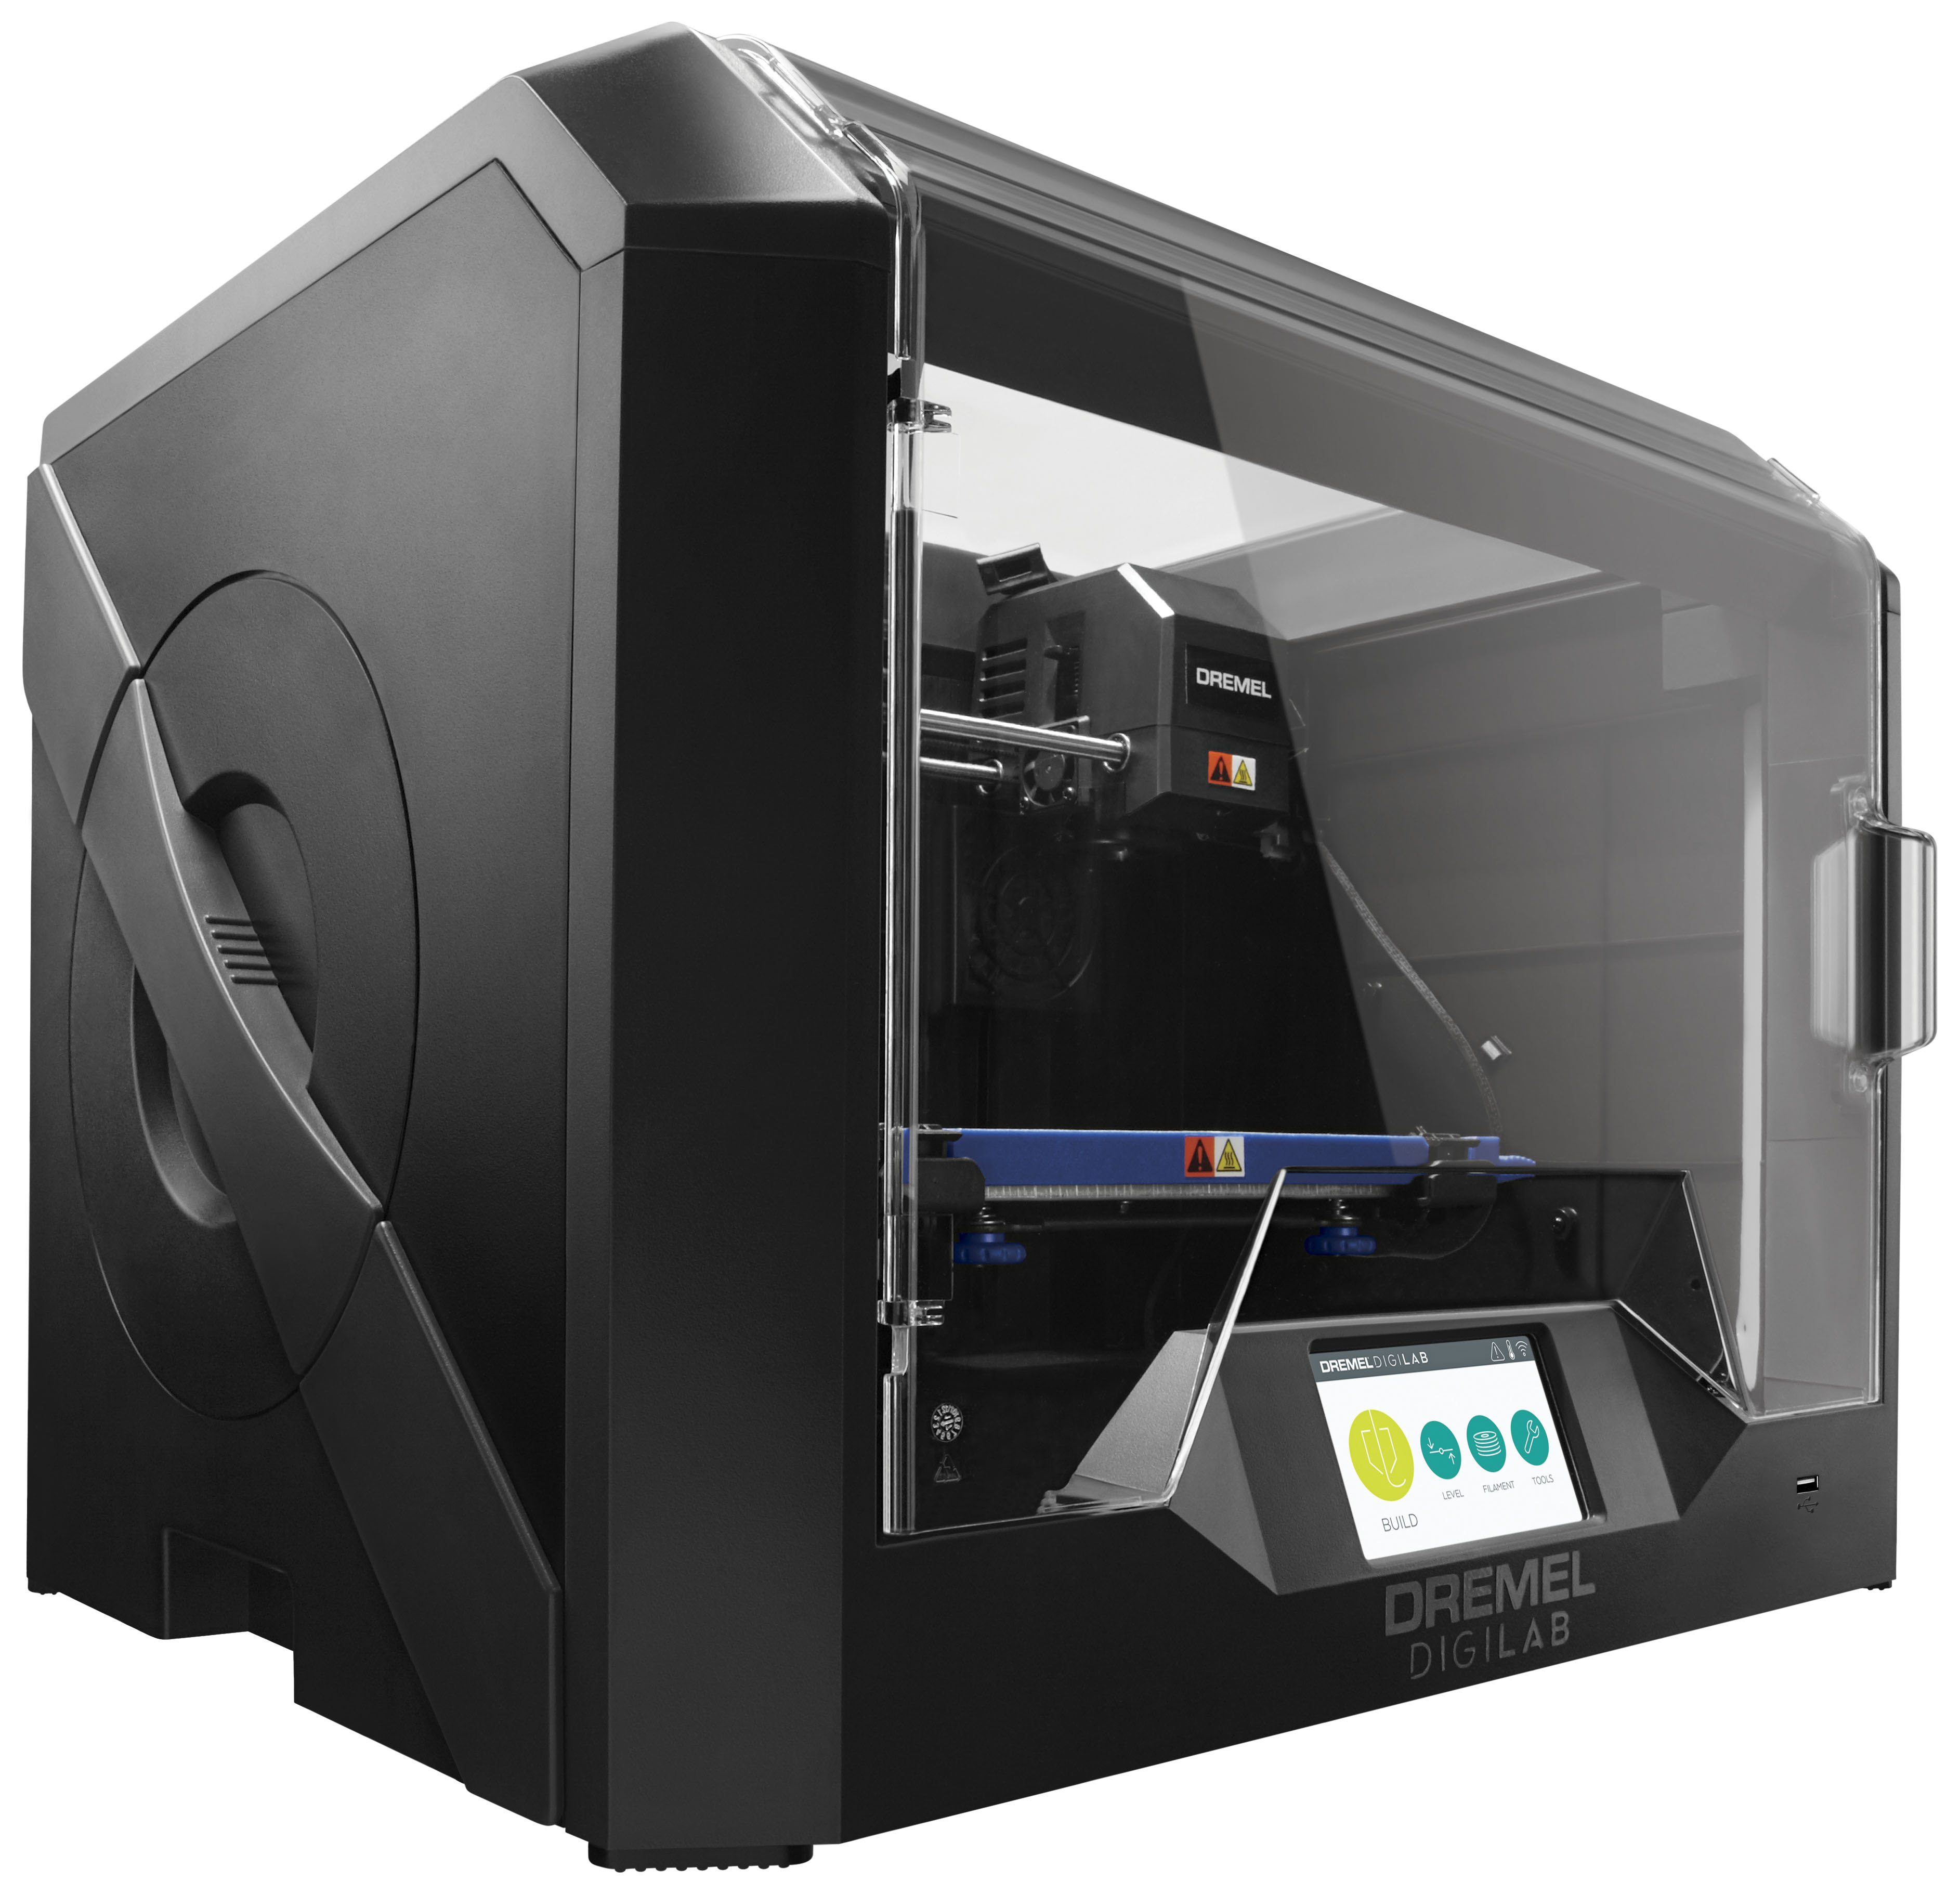 GE Dremel Digilab 3D45 3D printer